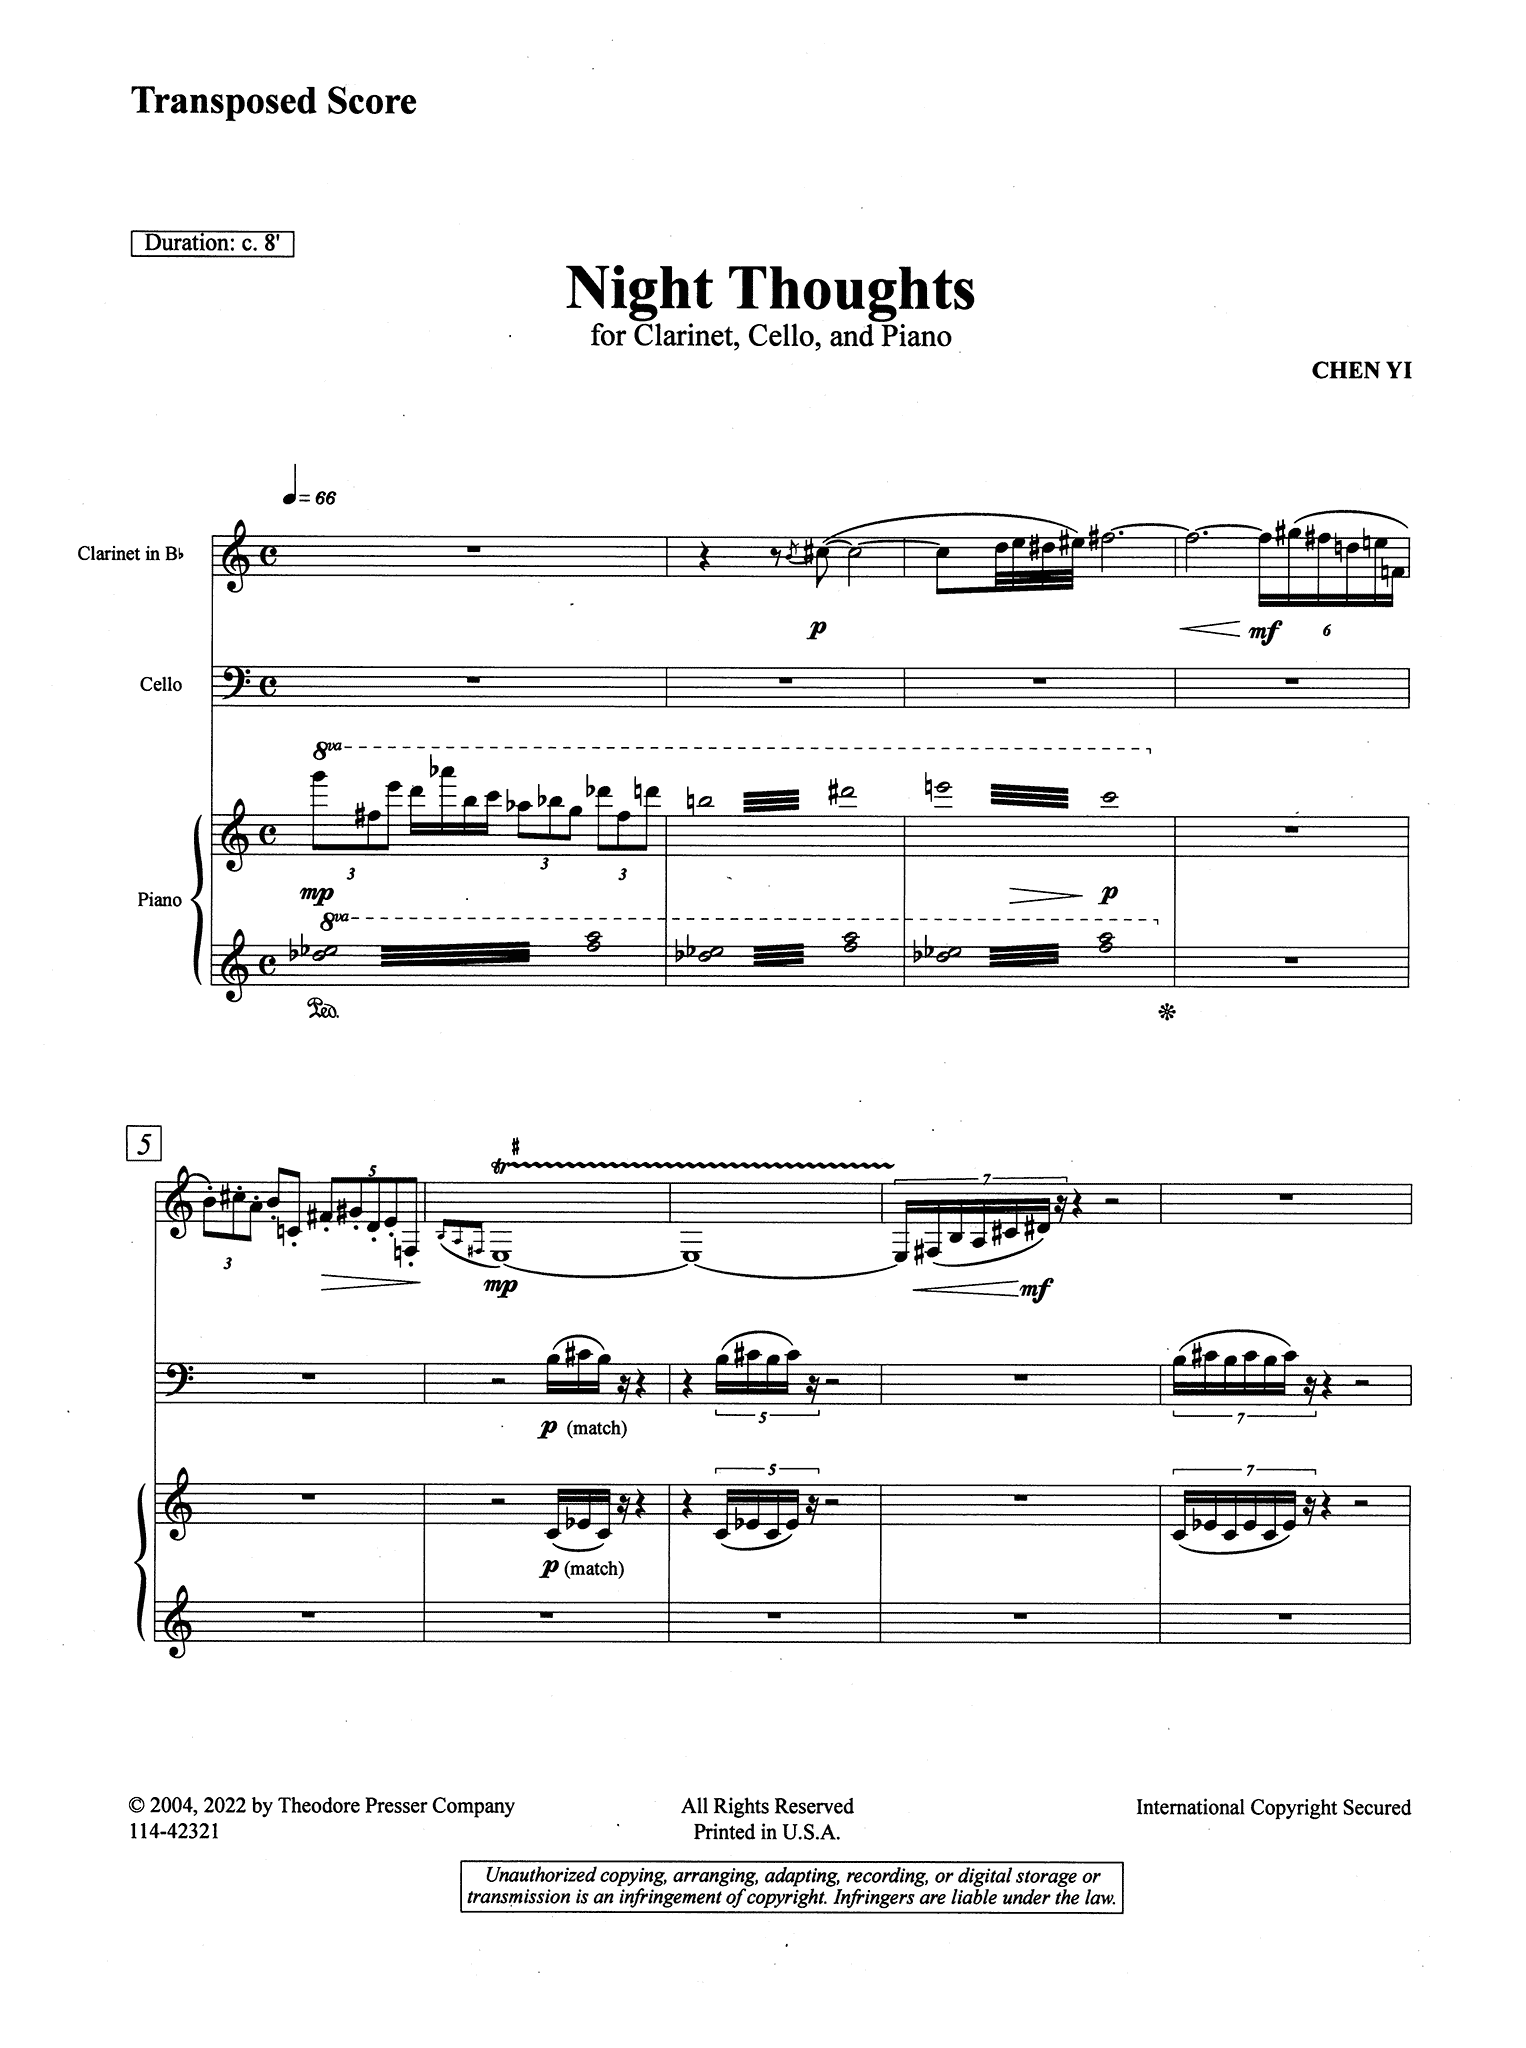 Chen Yi Night Thoughts clarinet cello piano trio score